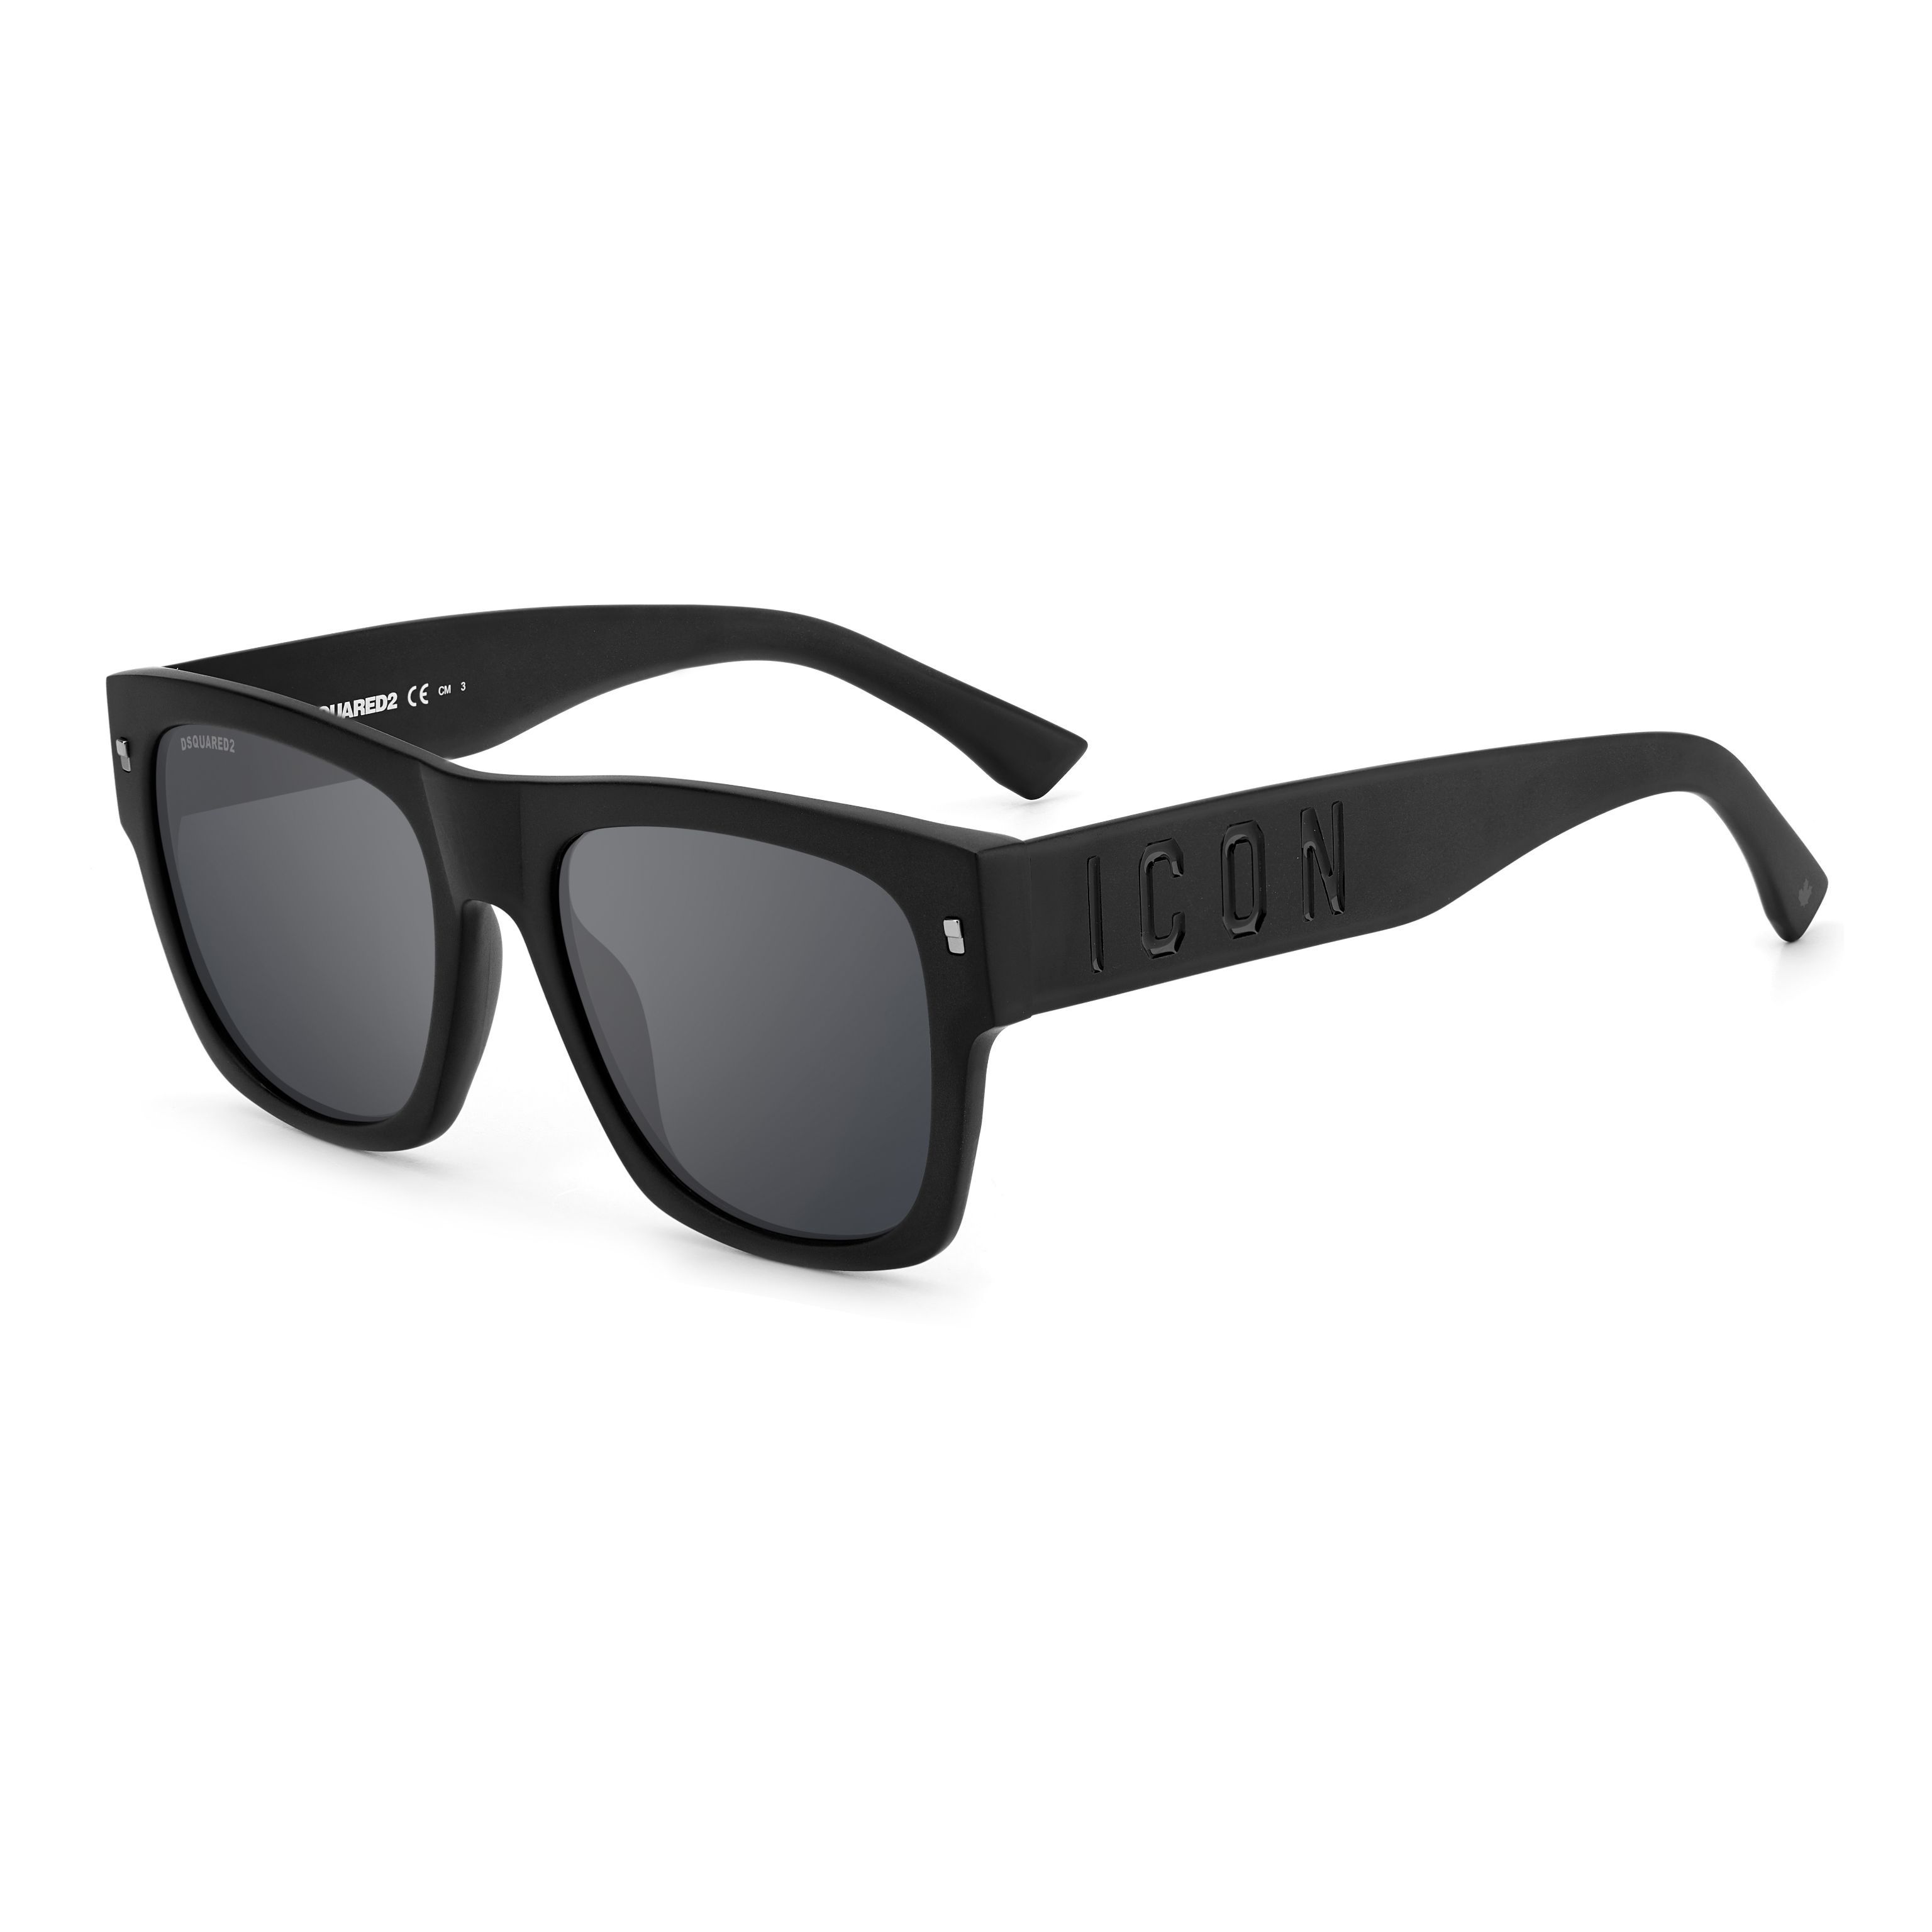 ICON 0004 S Square Sunglasses 003-T4 - size 55